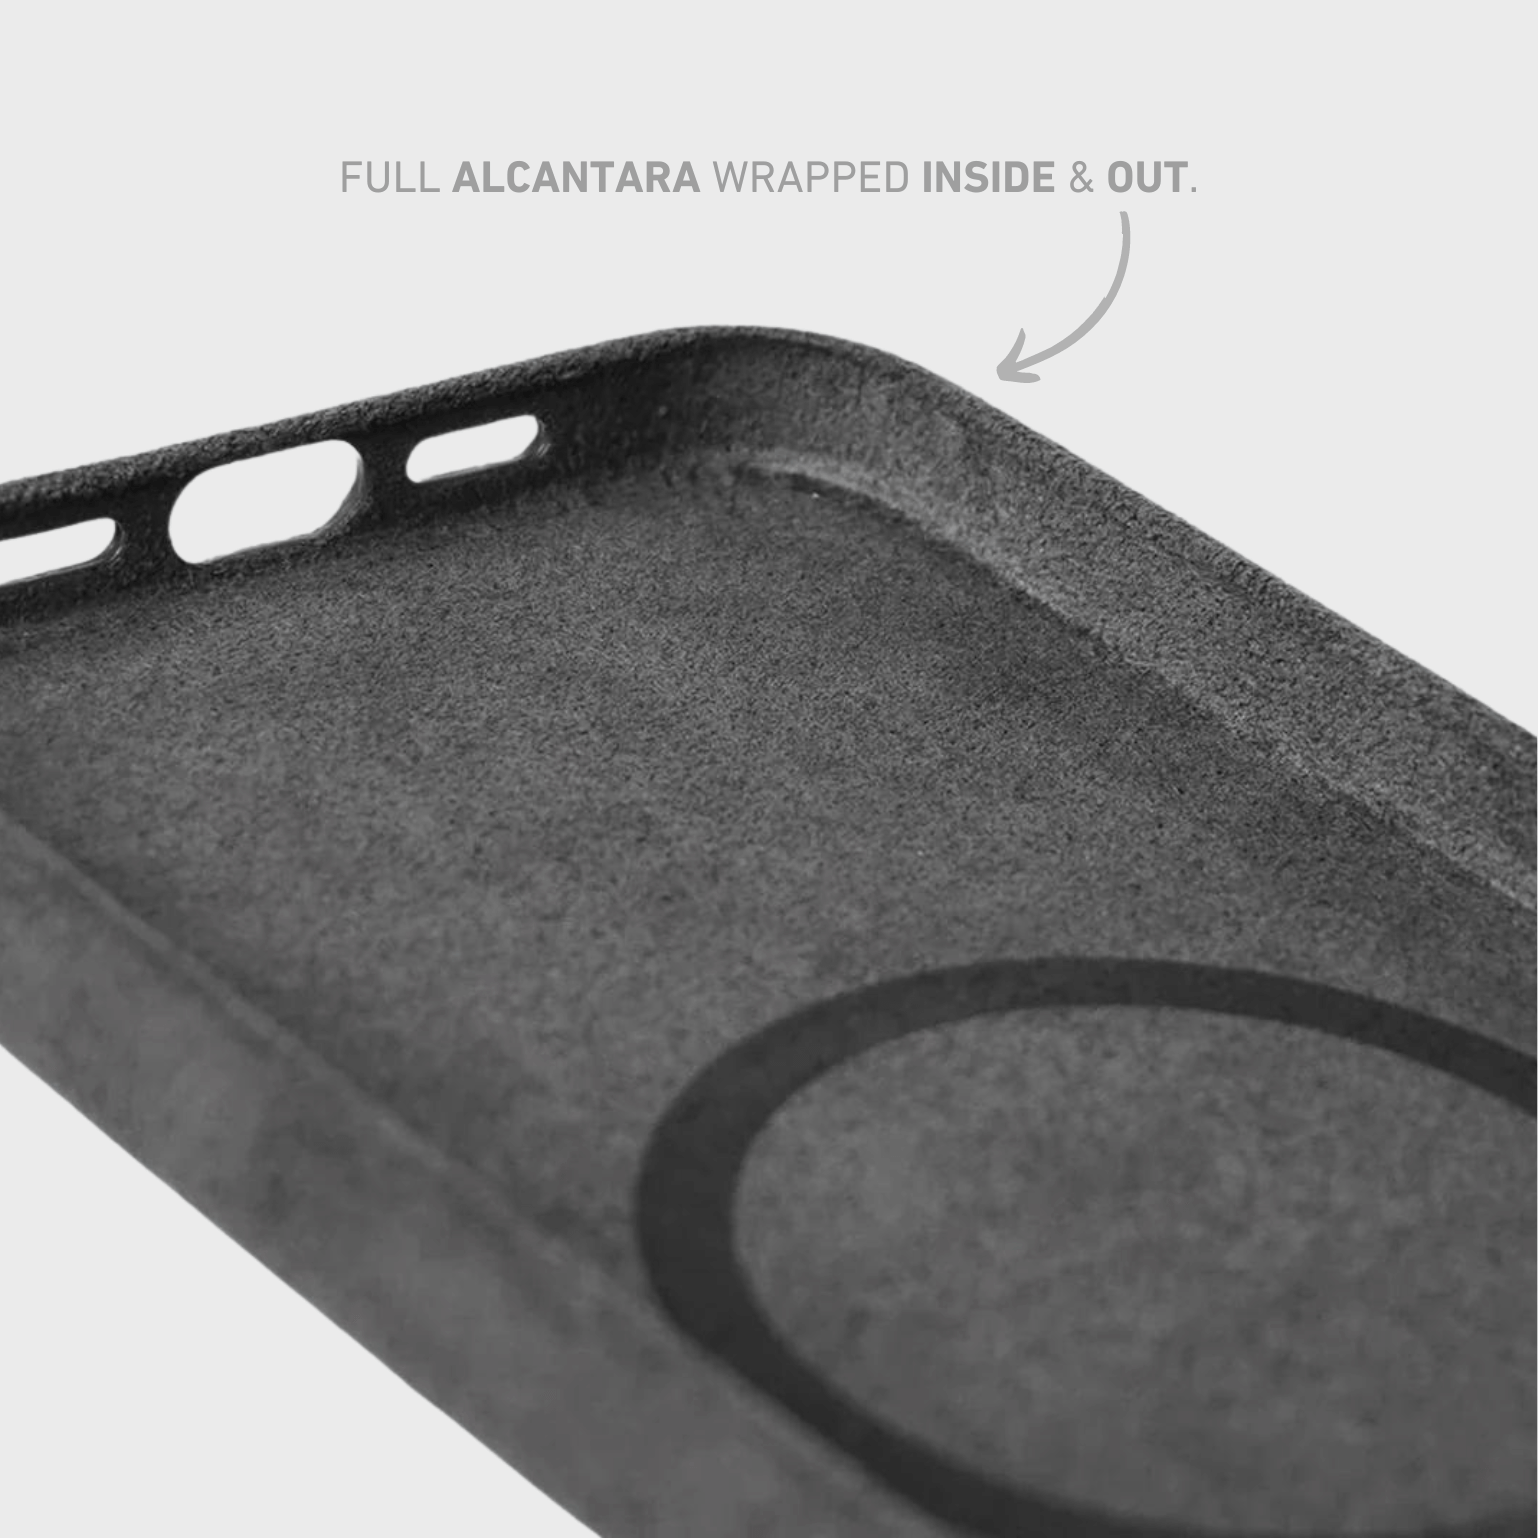 Alcantara Case - Space Gray Edition